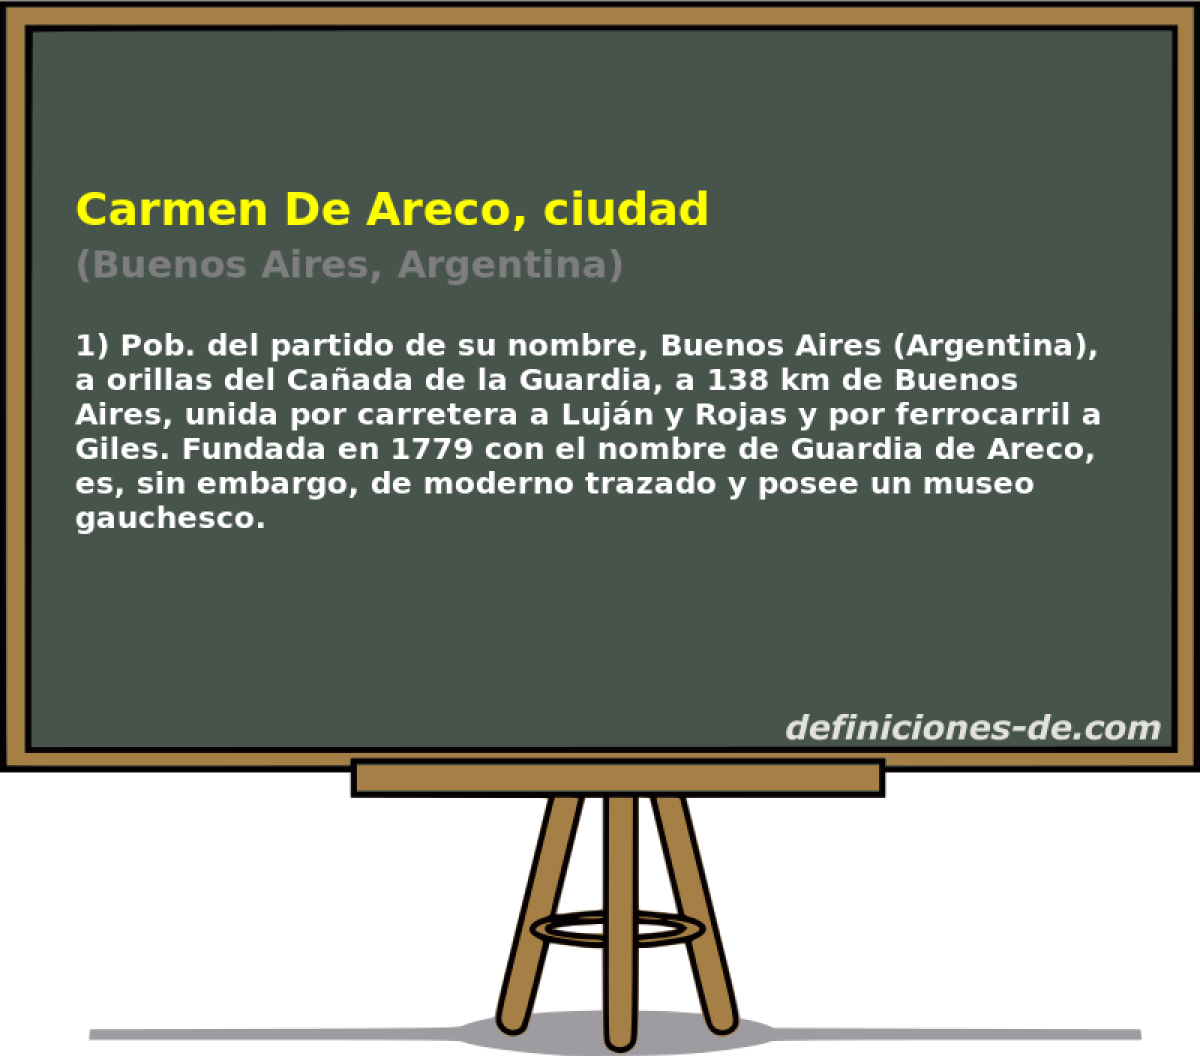 Carmen De Areco, ciudad (Buenos Aires, Argentina)